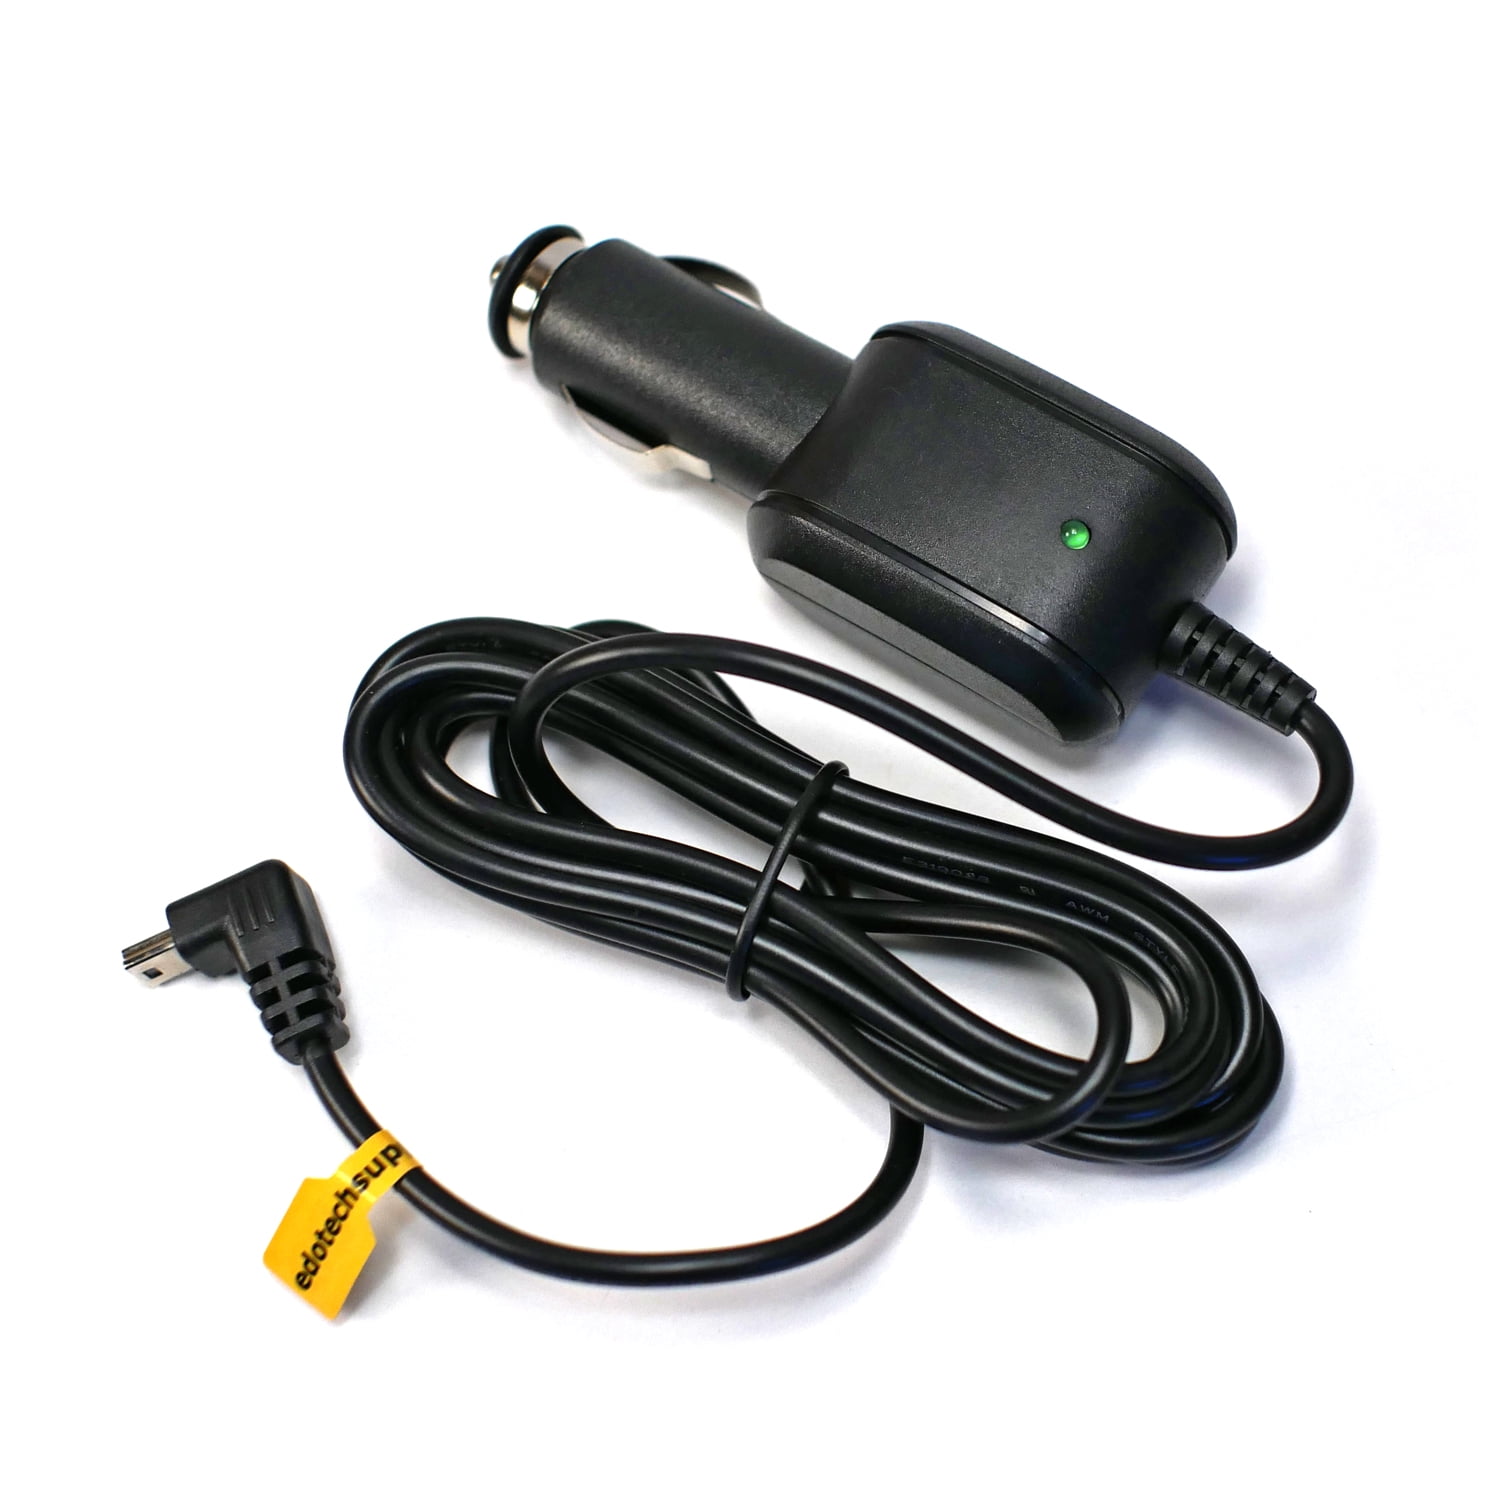 USB Data CABLE Garmin Nuvi 1250 1300 1350 1350T cord PC 